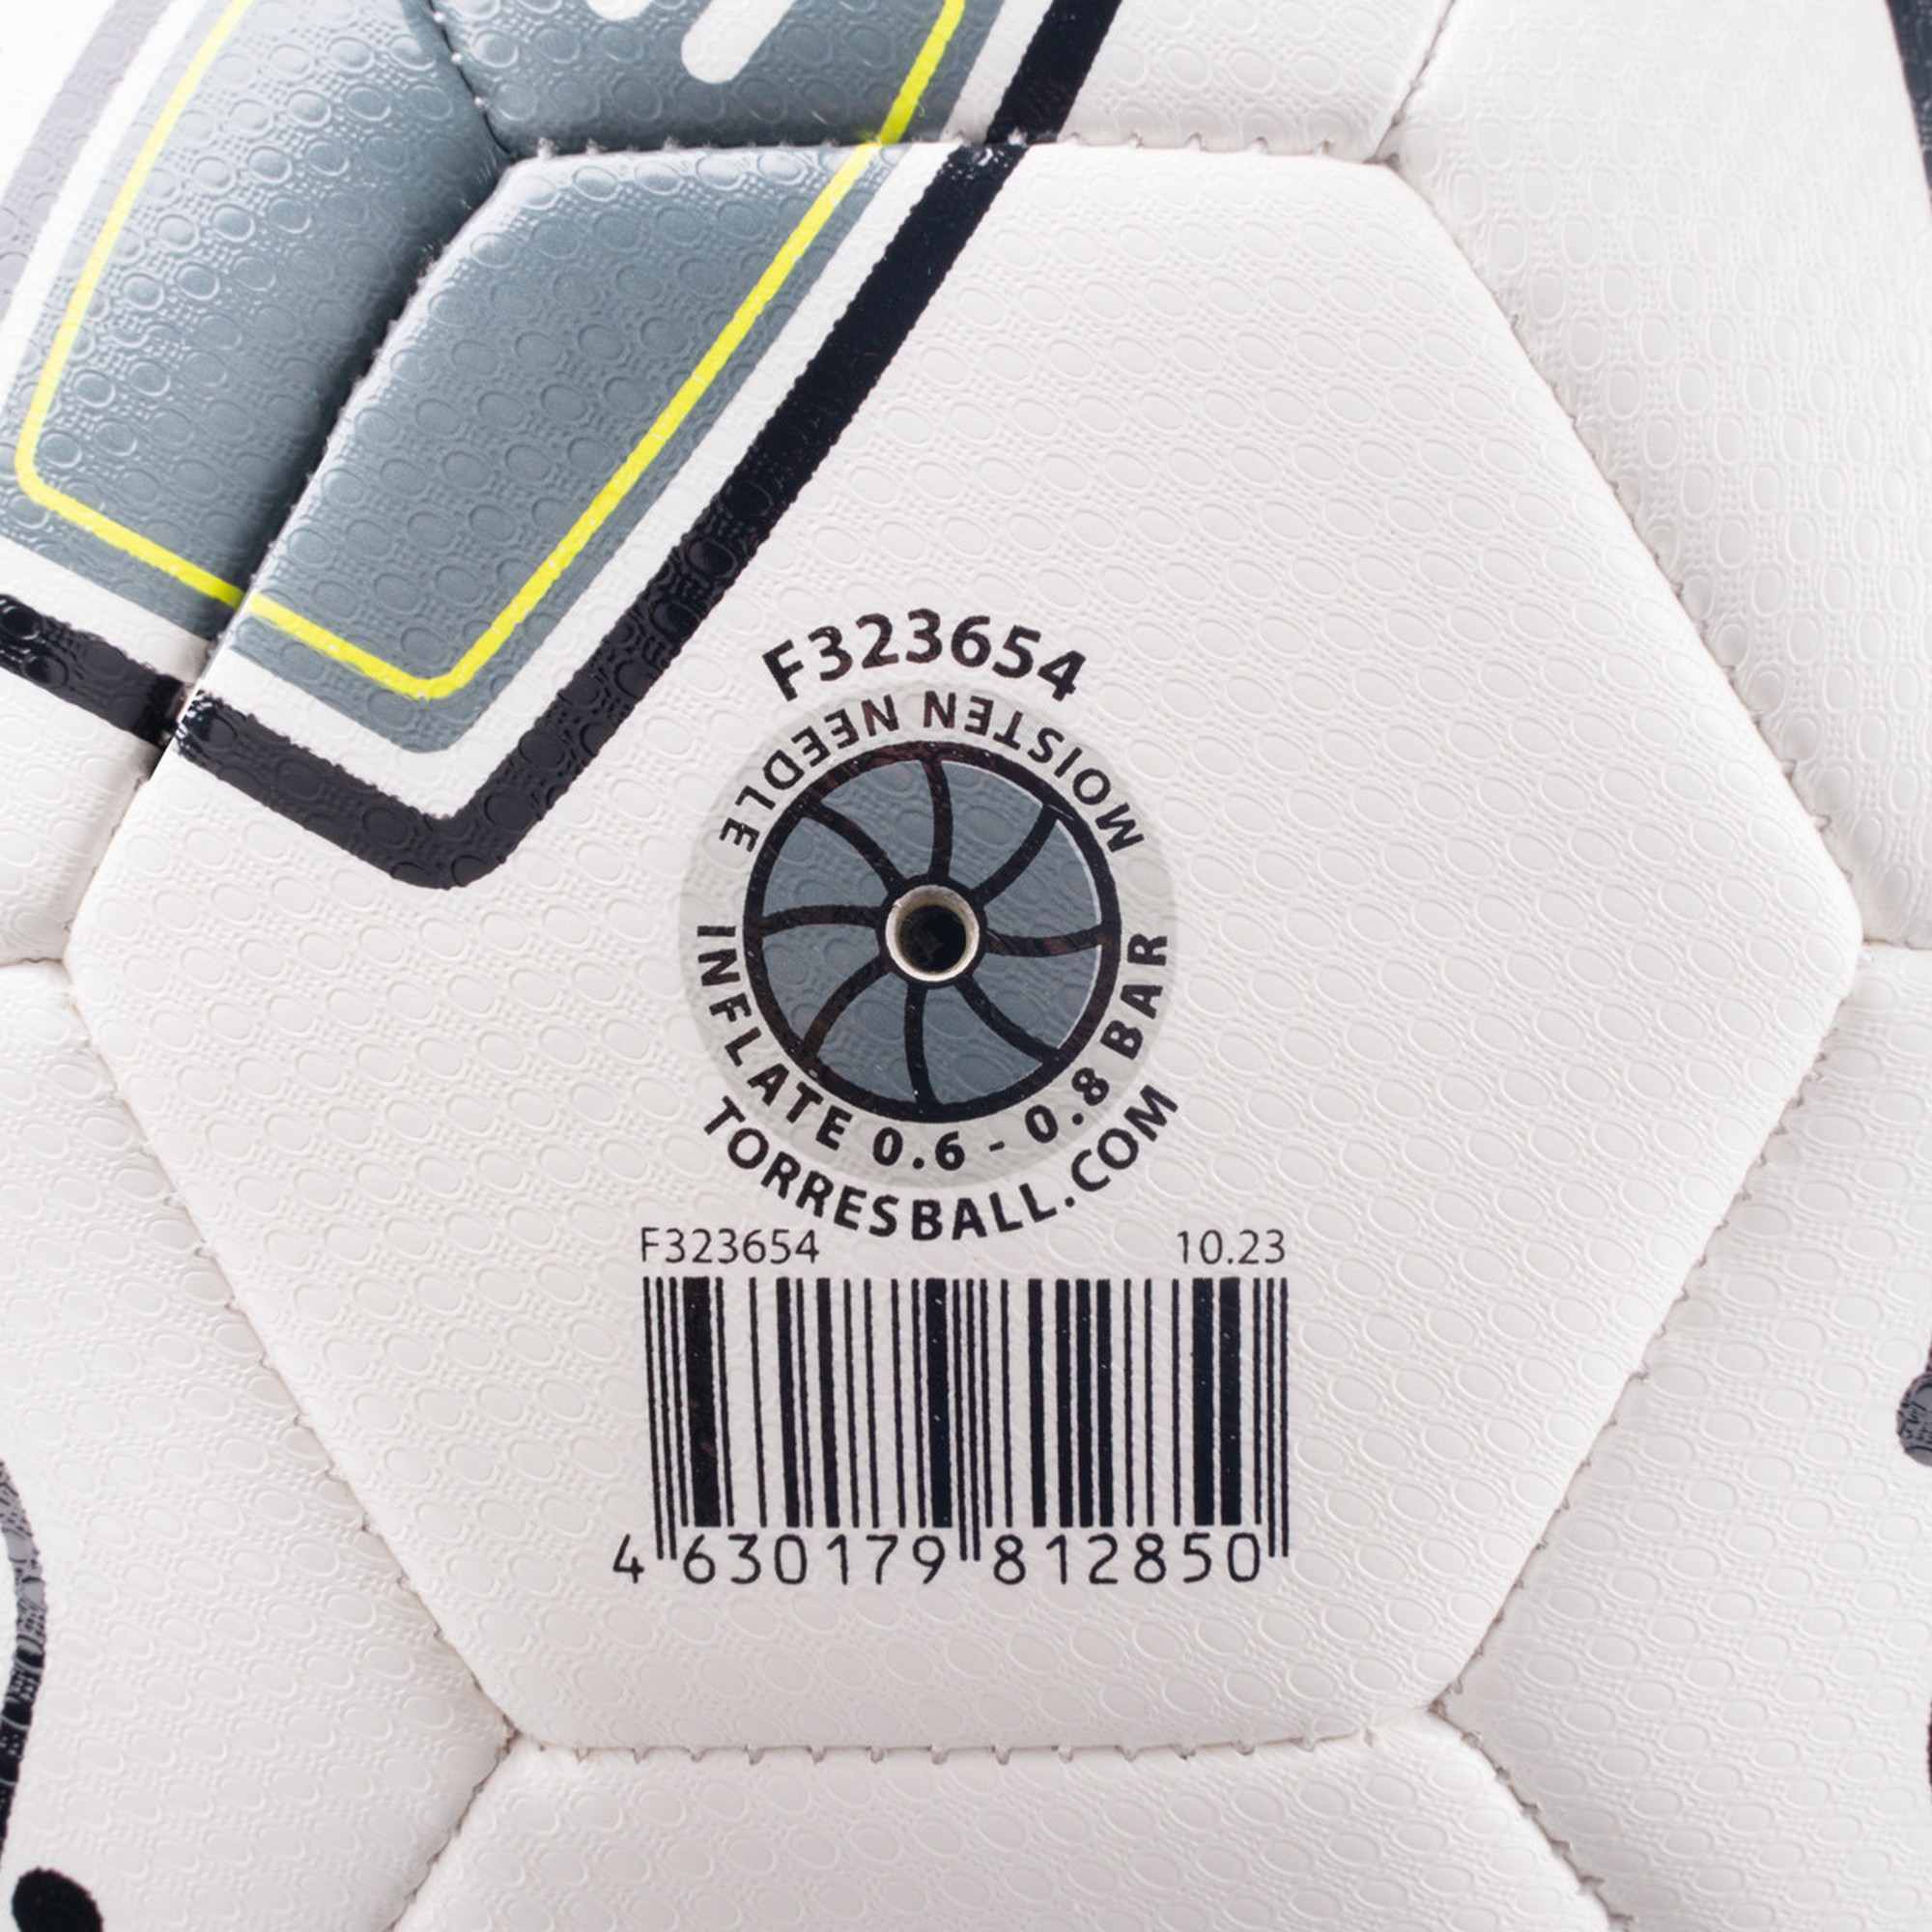 Мяч футбольный Torres BM 300 F323654 р.4 2000_2000